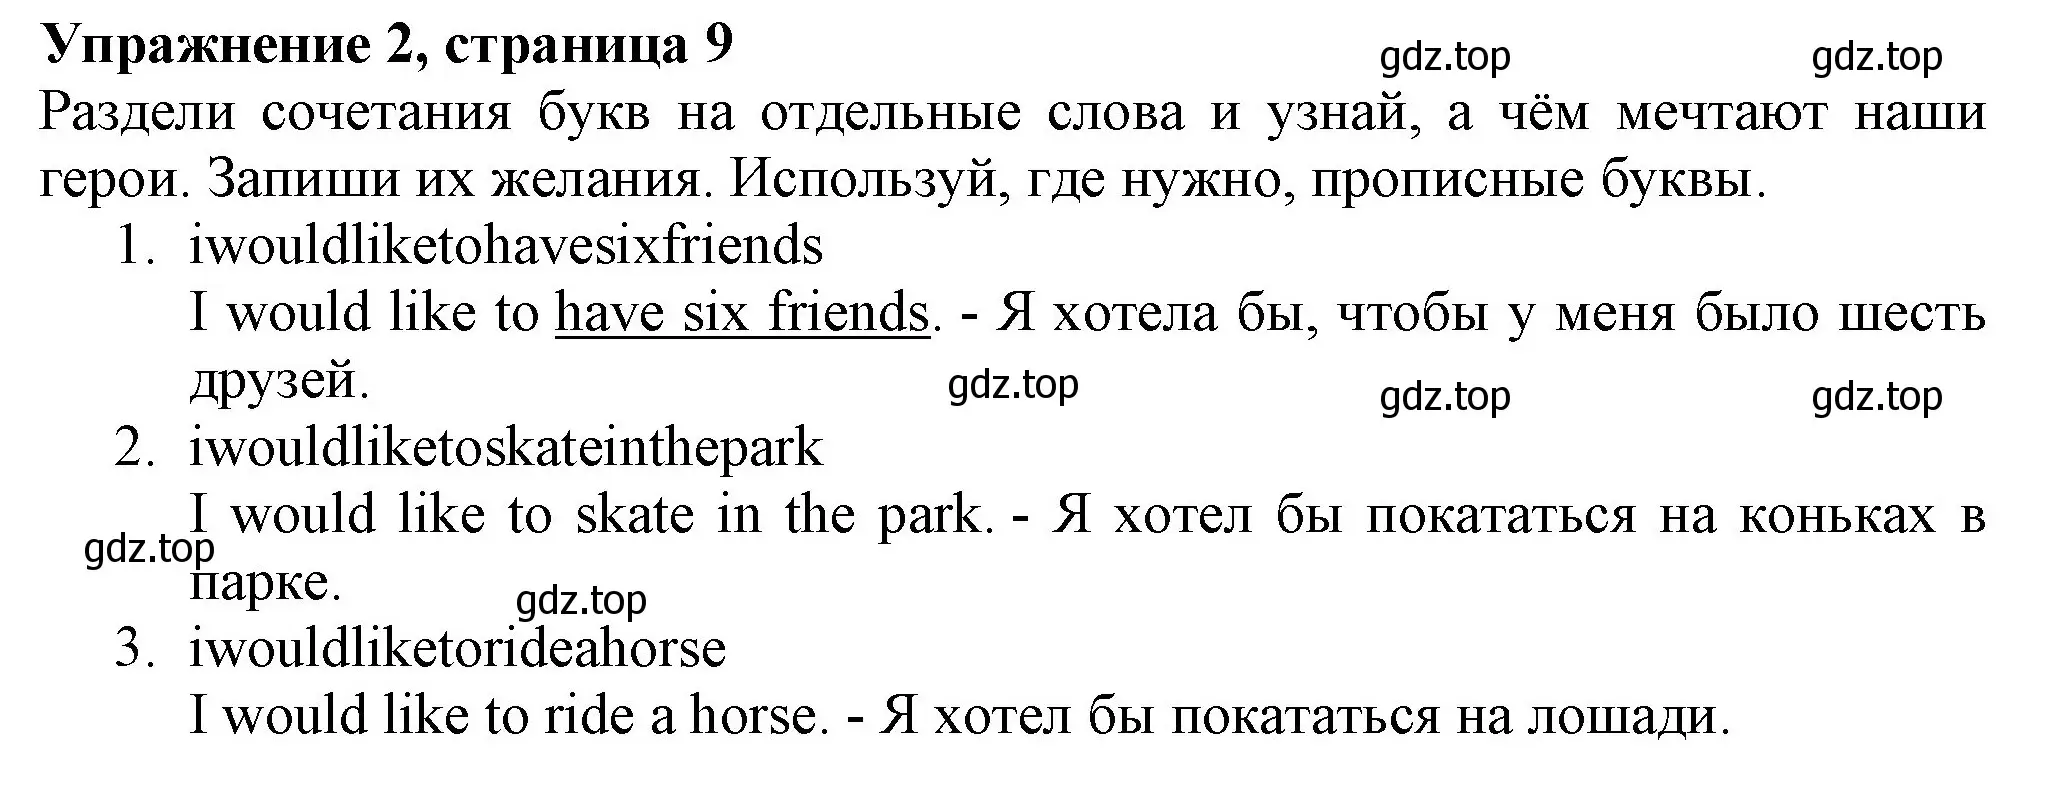 Решение номер 2 (страница 9) гдз по английскому языку 3 класс Биболетова, Денисенко, рабочая тетрадь